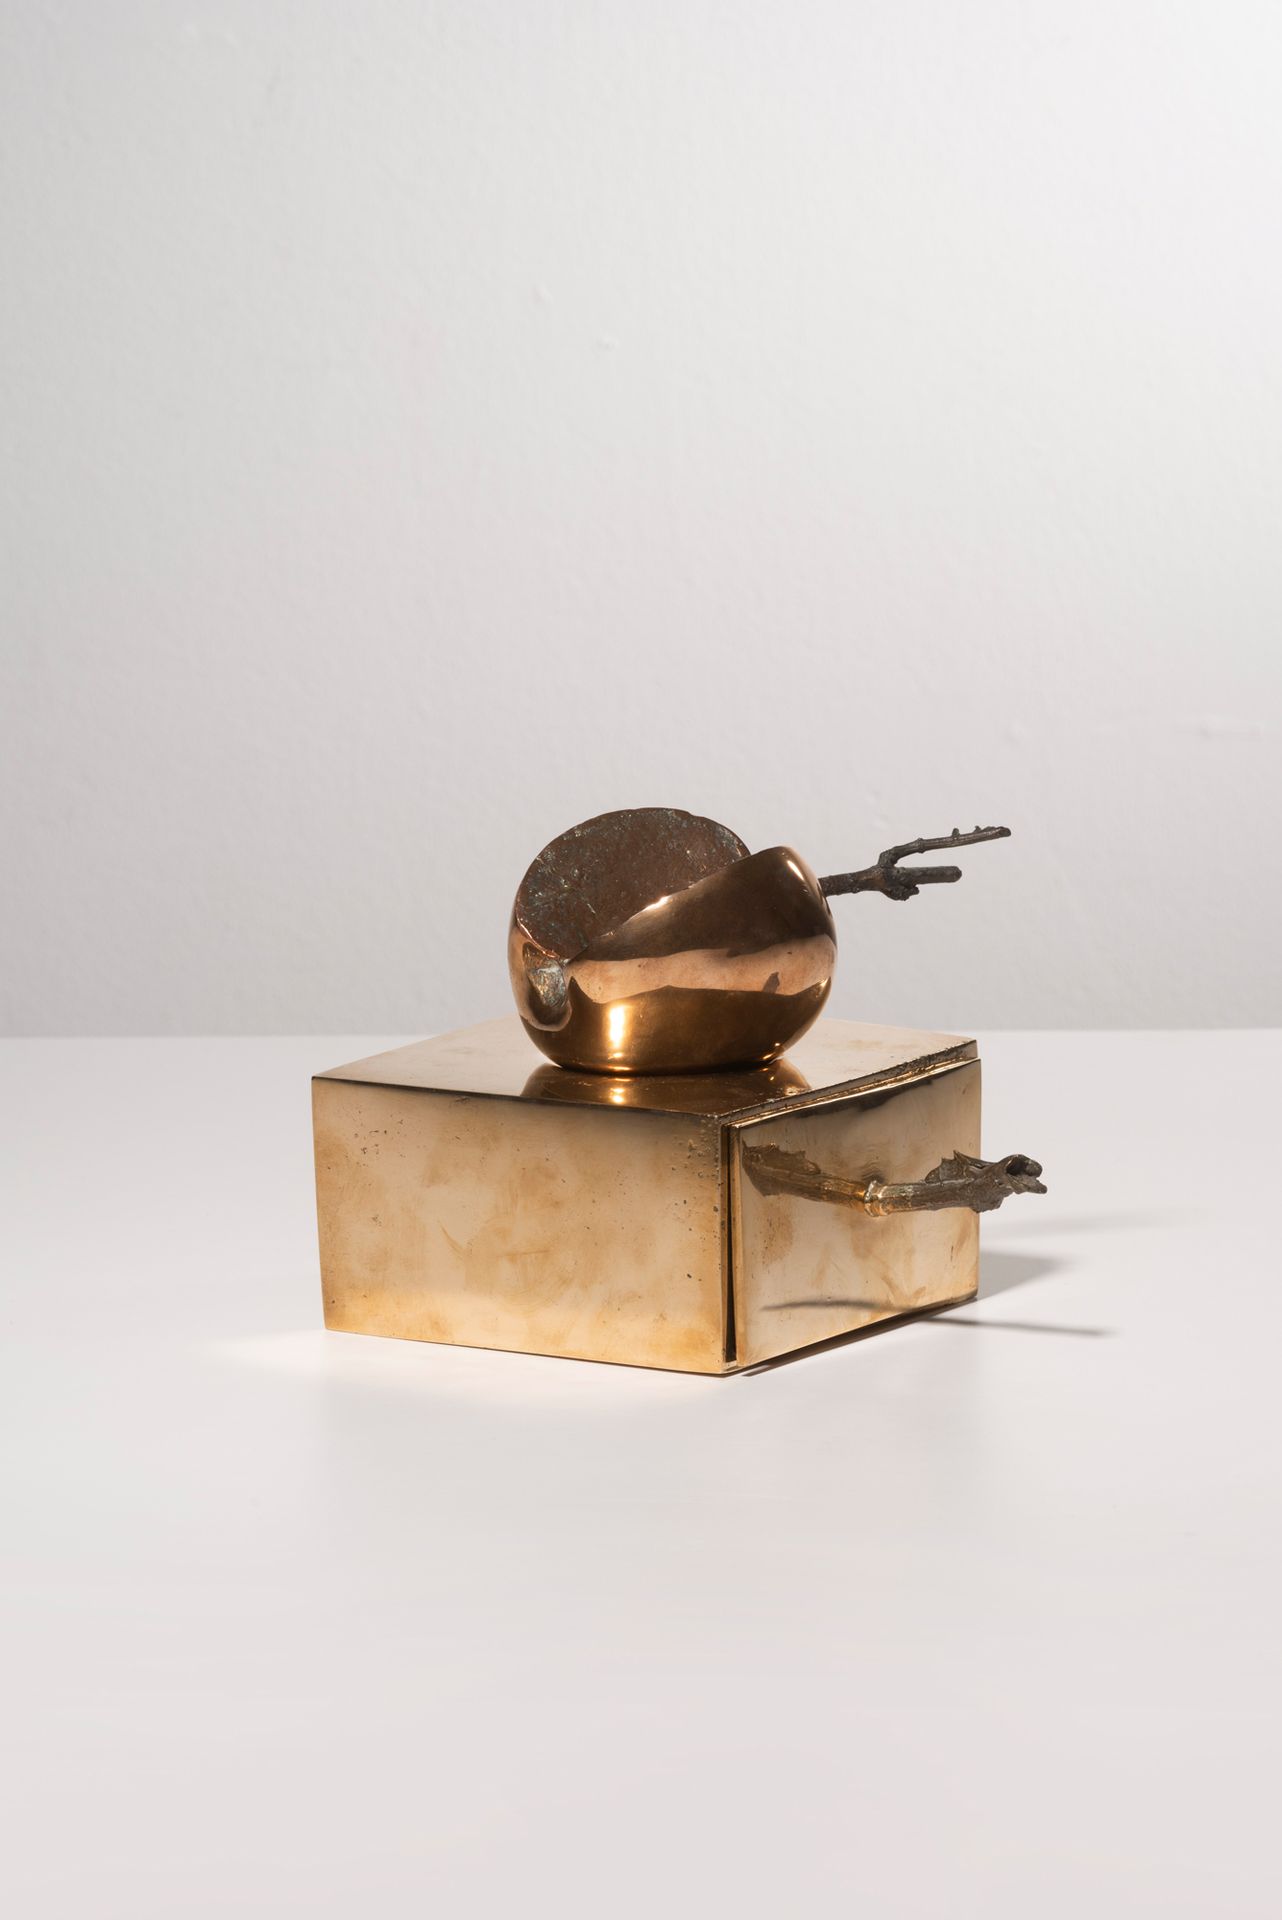 ALIK CAVALIERE (1926-1998) Apfel und Schublade, um 1968
Bronze mit goldener und &hellip;